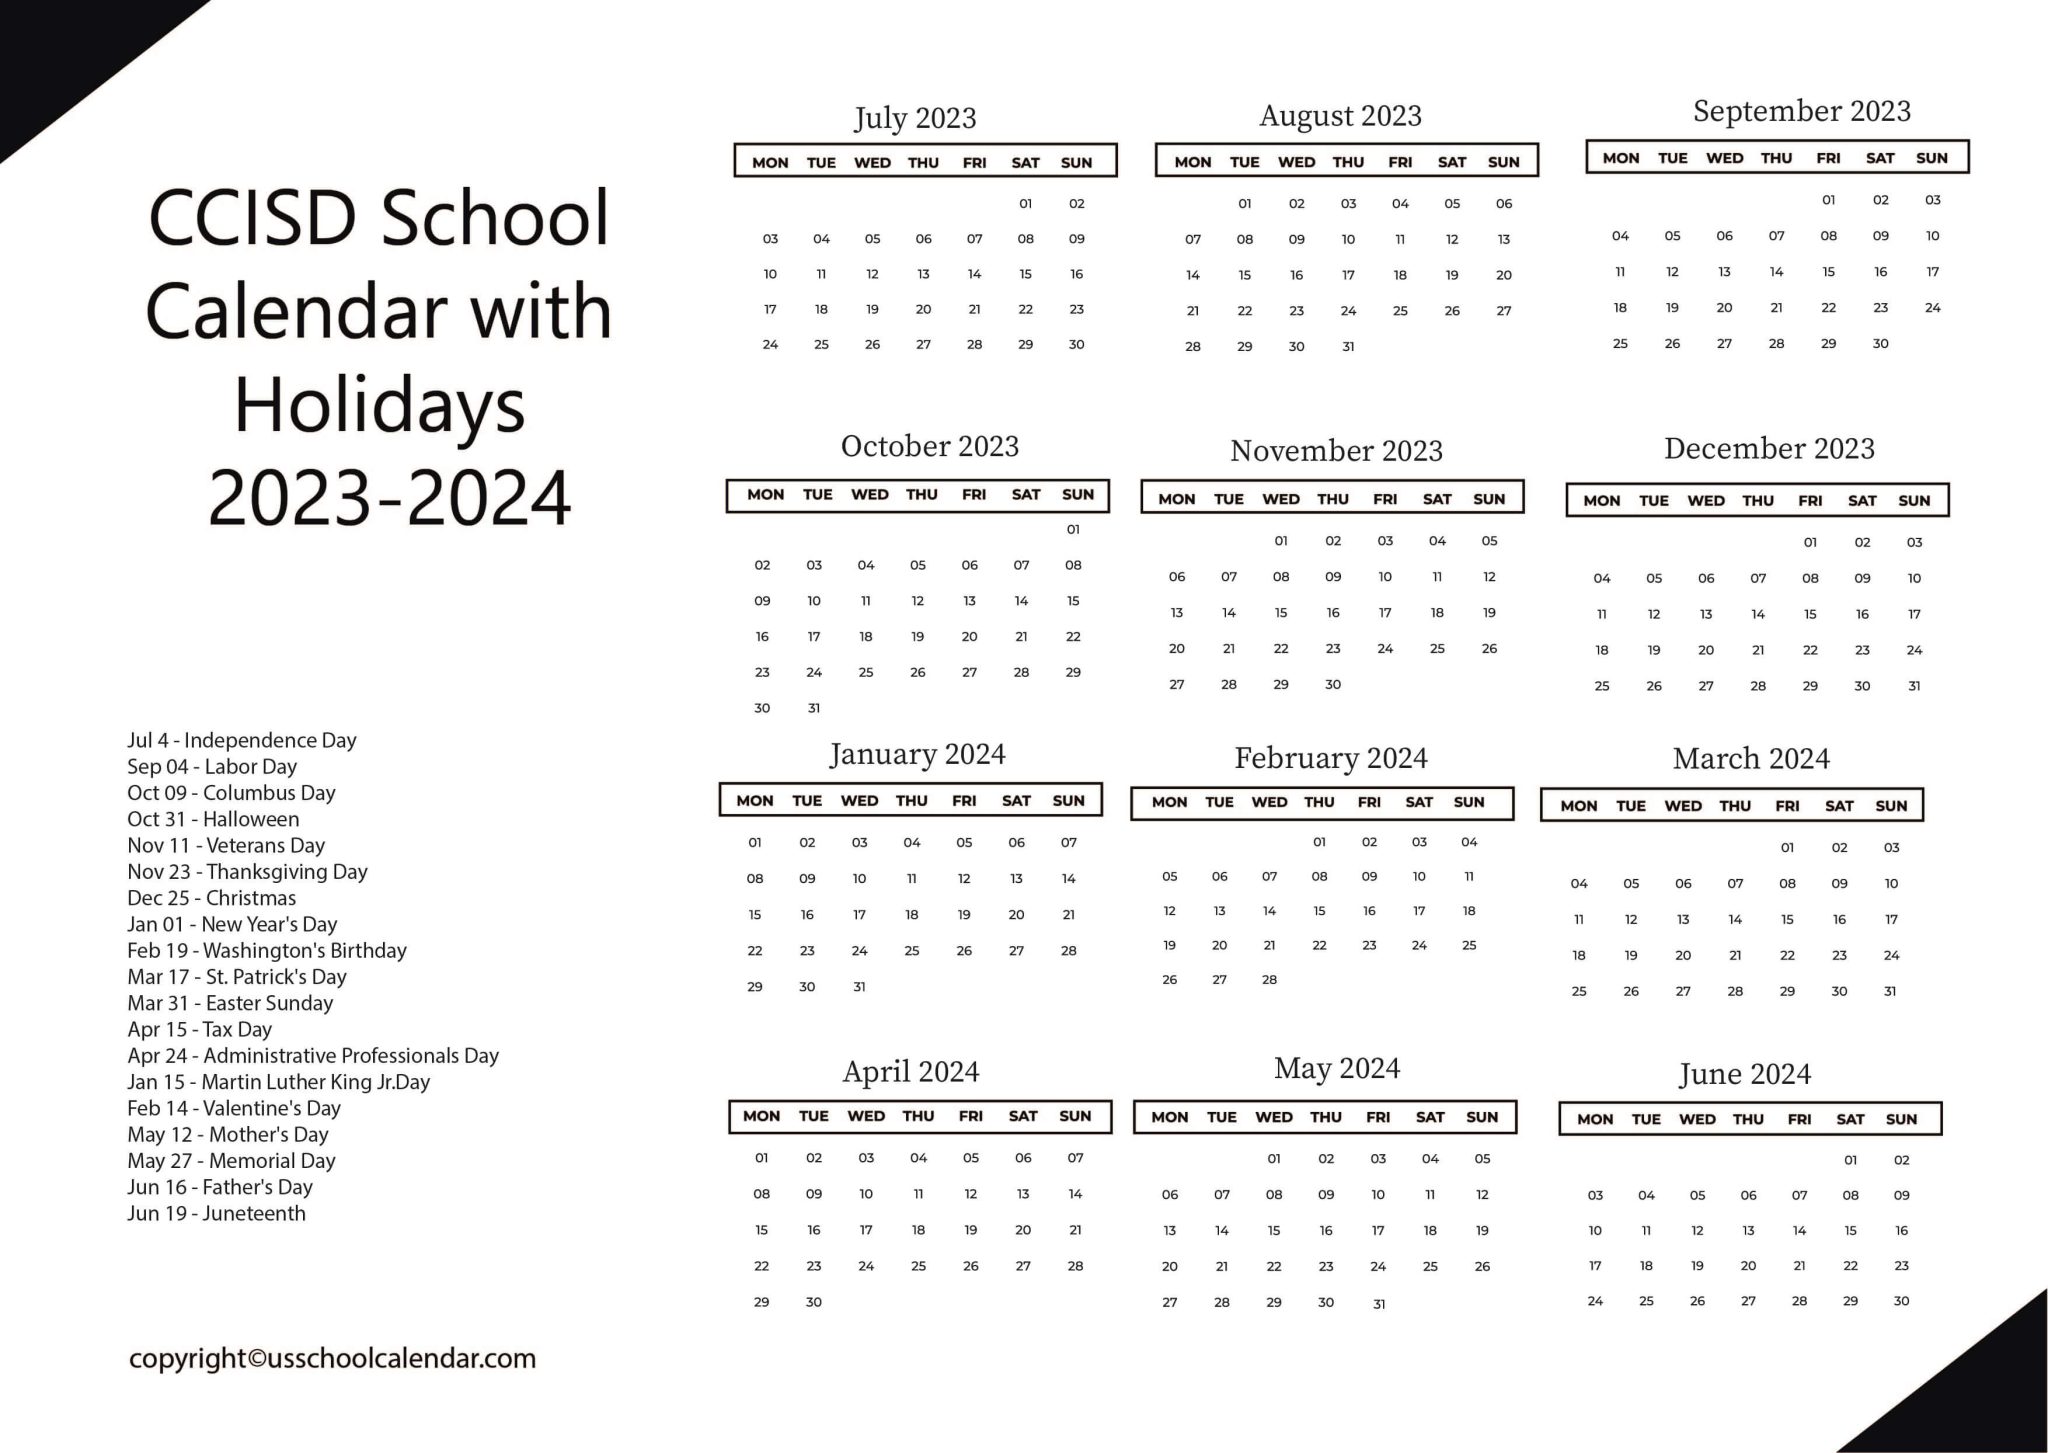 ccisd-school-calendar-with-holidays-2023-2024